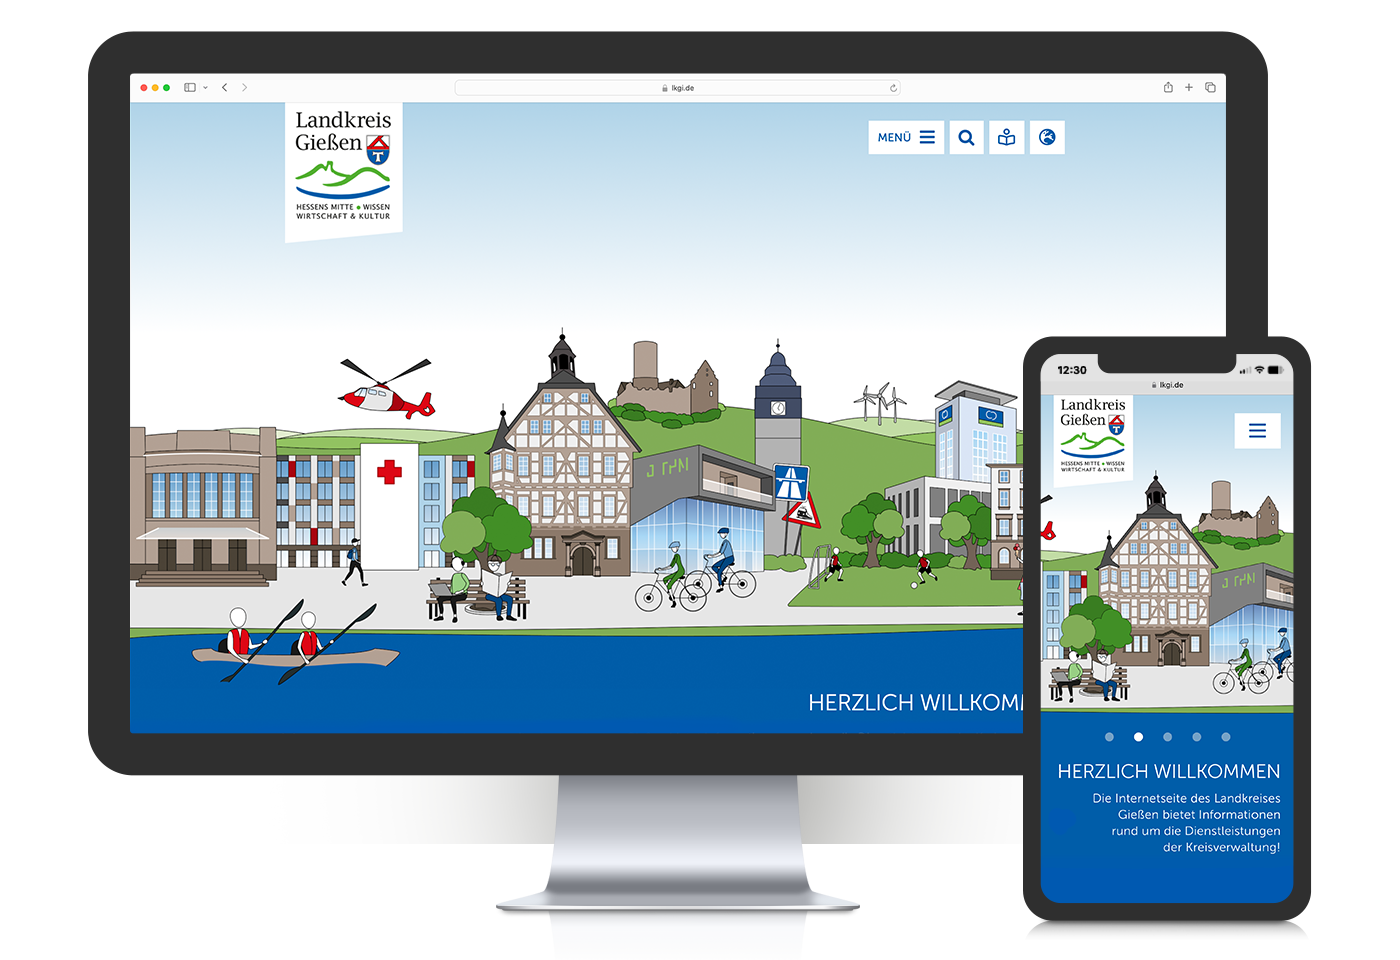 Mockup der fertigen Illustration - Headerbild der neuen Website für den Landkreis Giessen